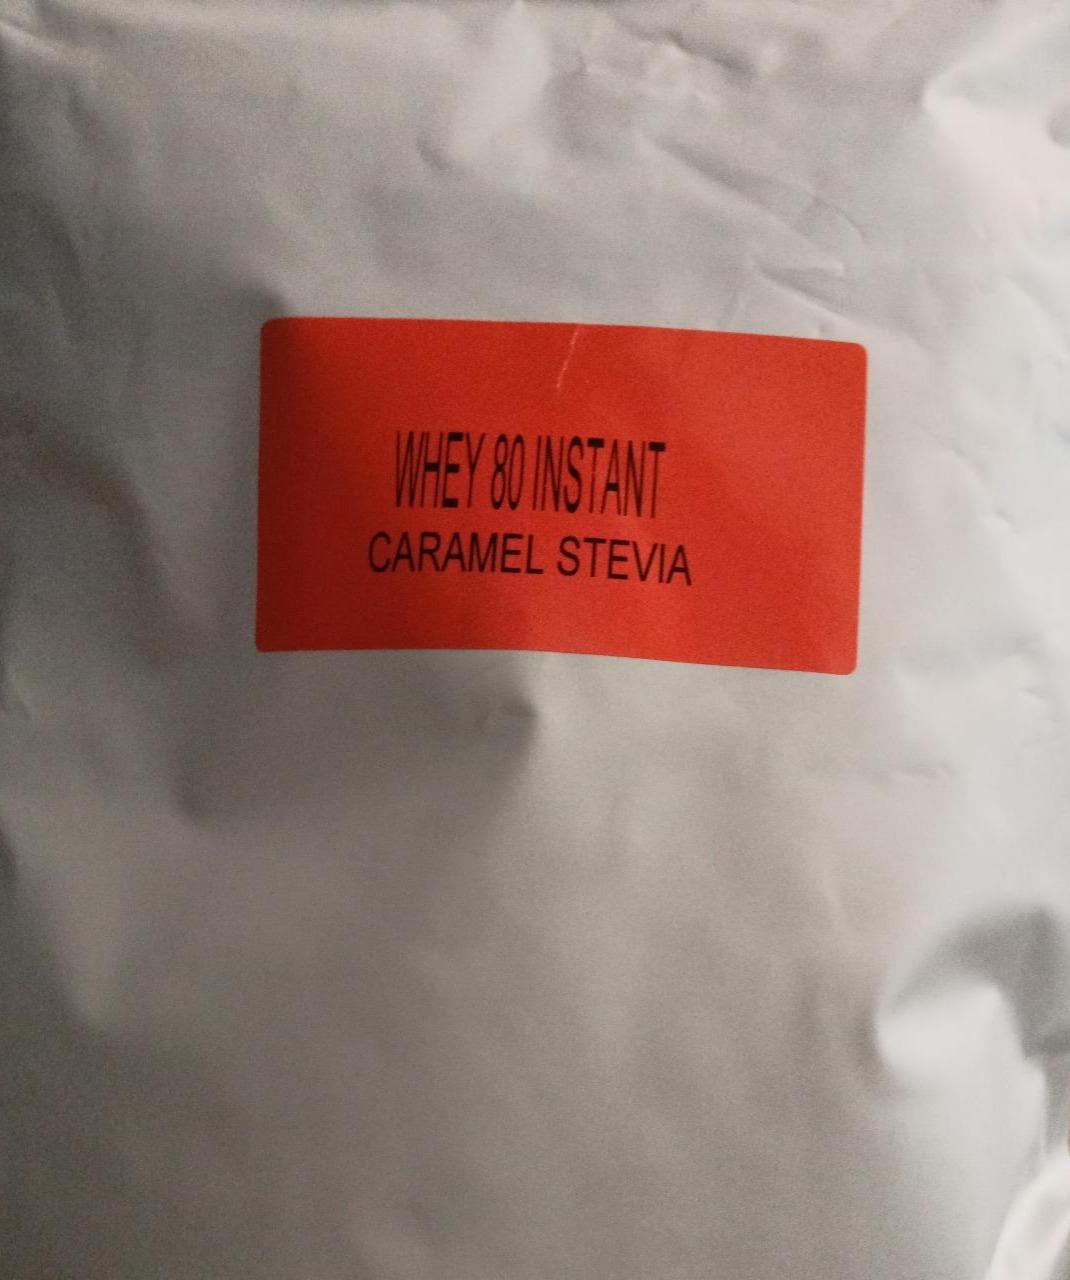 Fotografie - Whey 80 Instant Caramel Stevia Still Mass